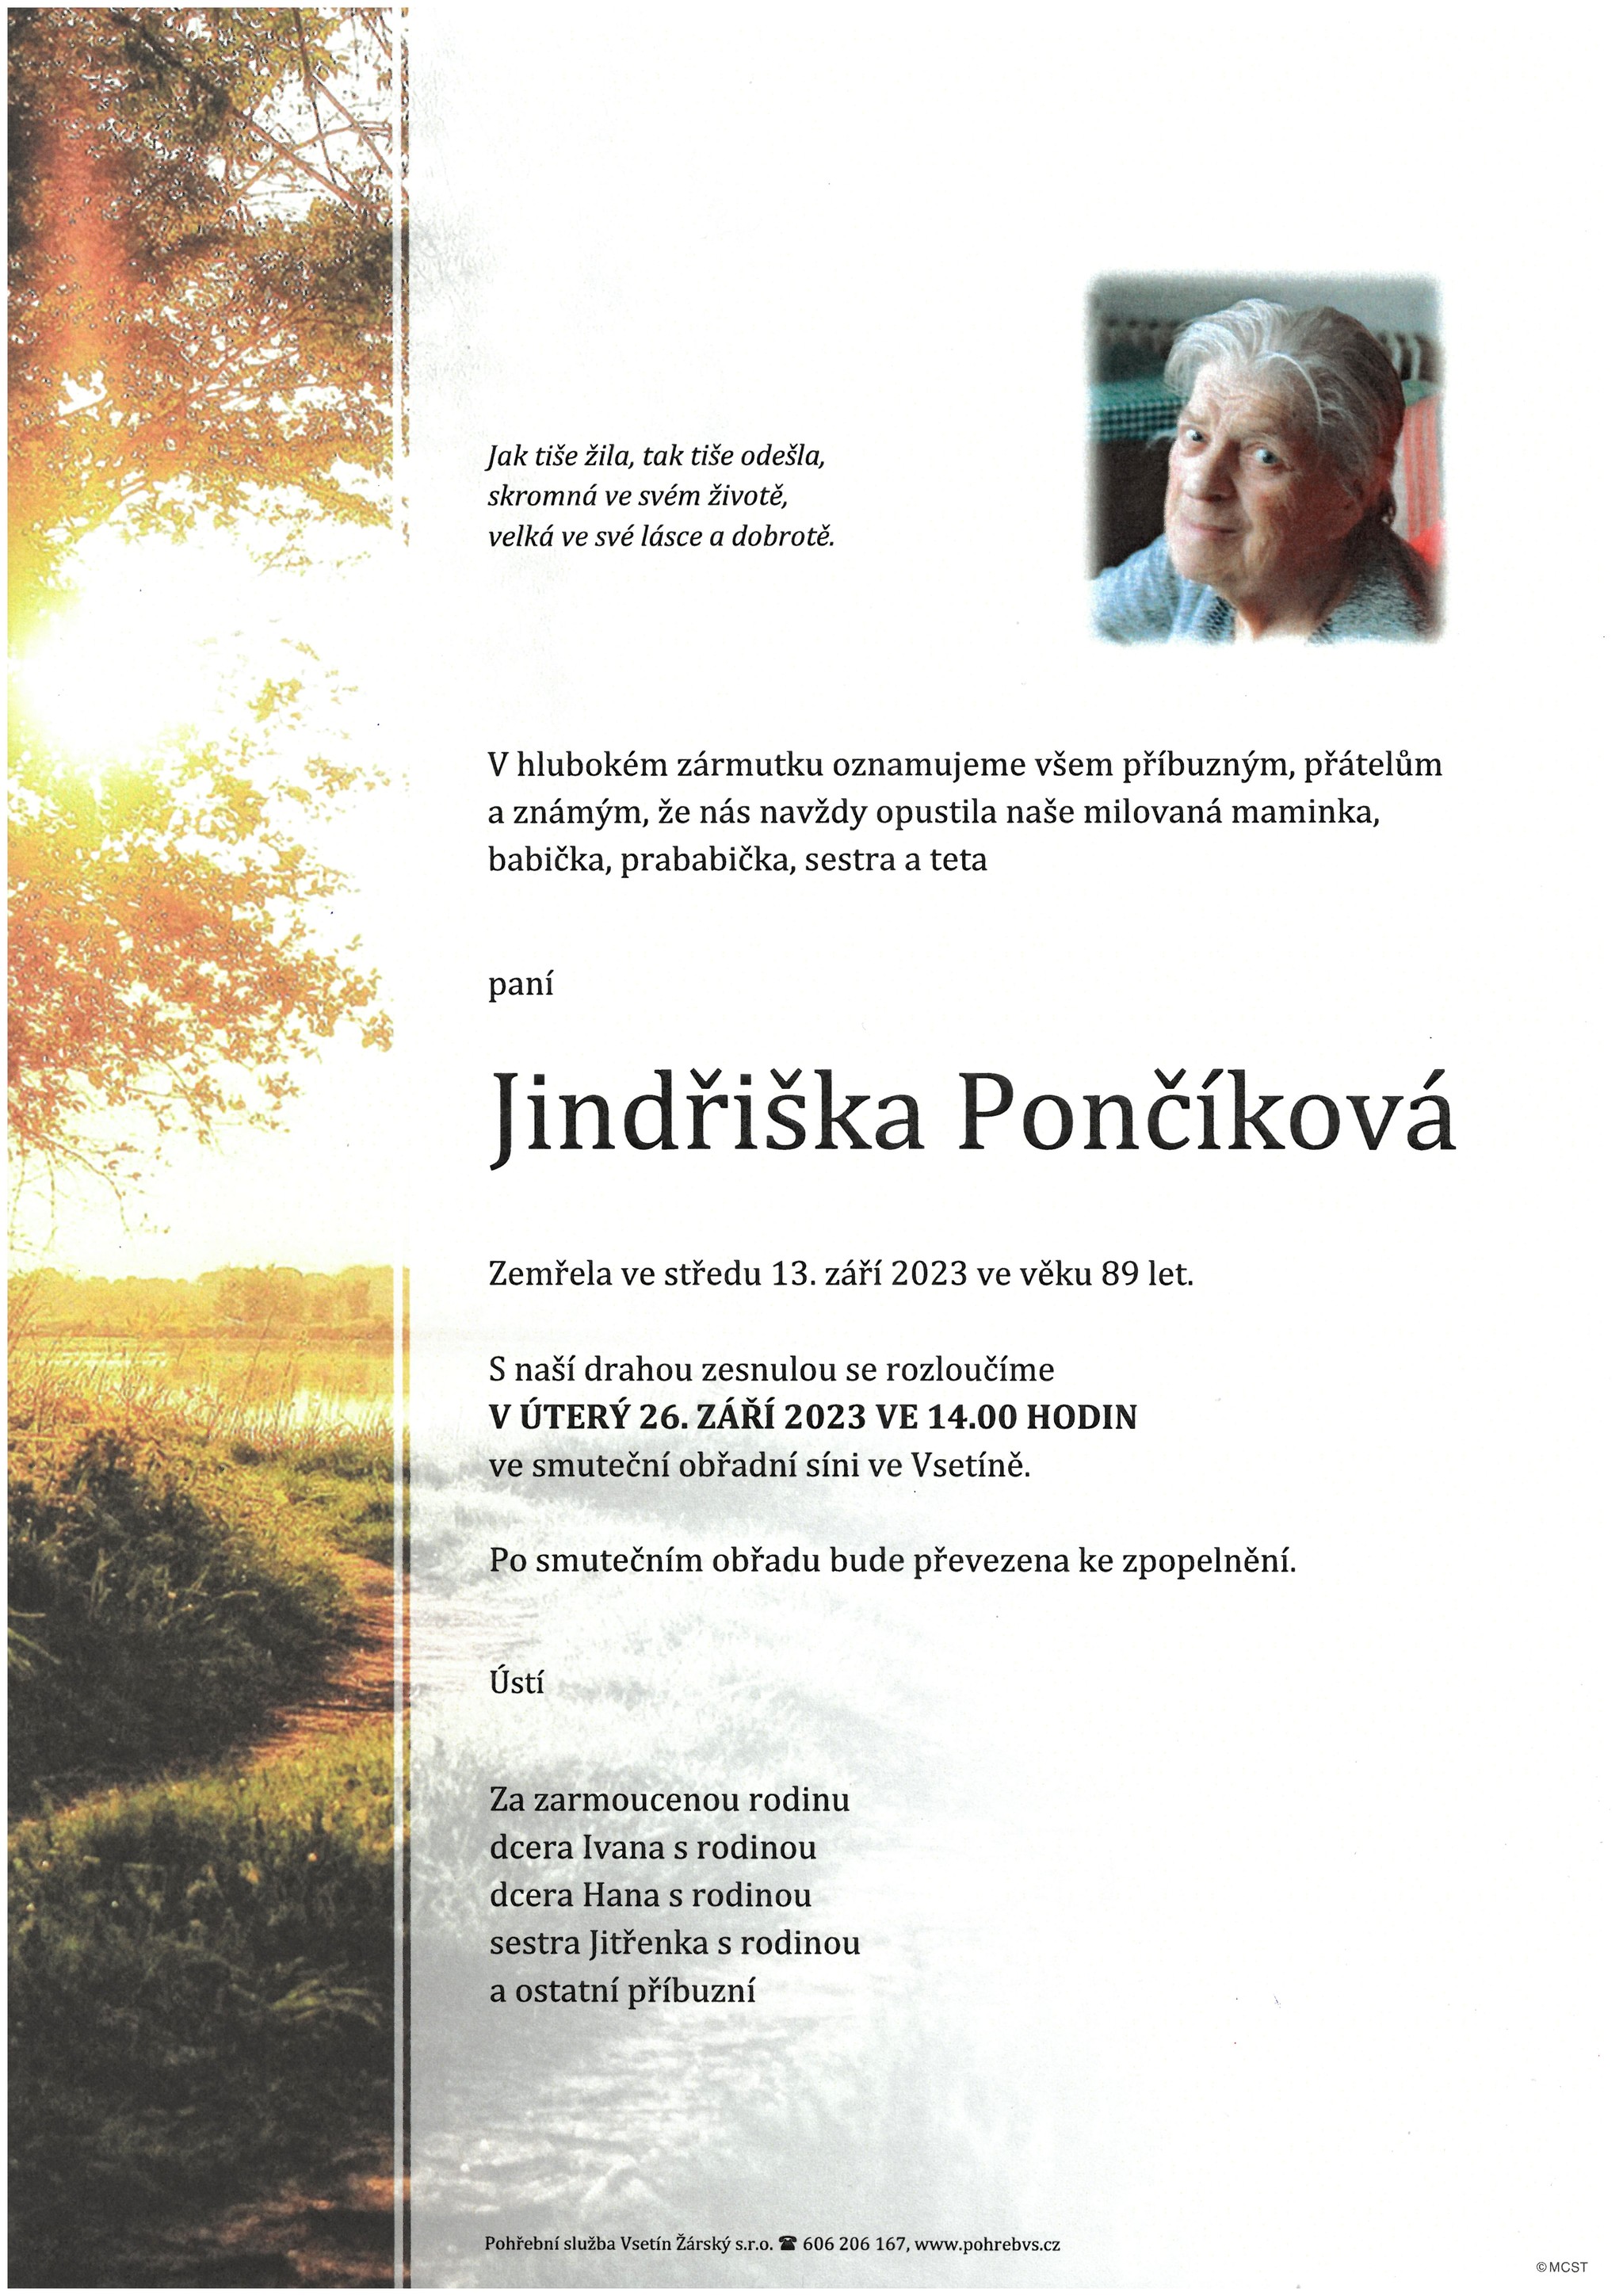 Jindřiška Pončíková